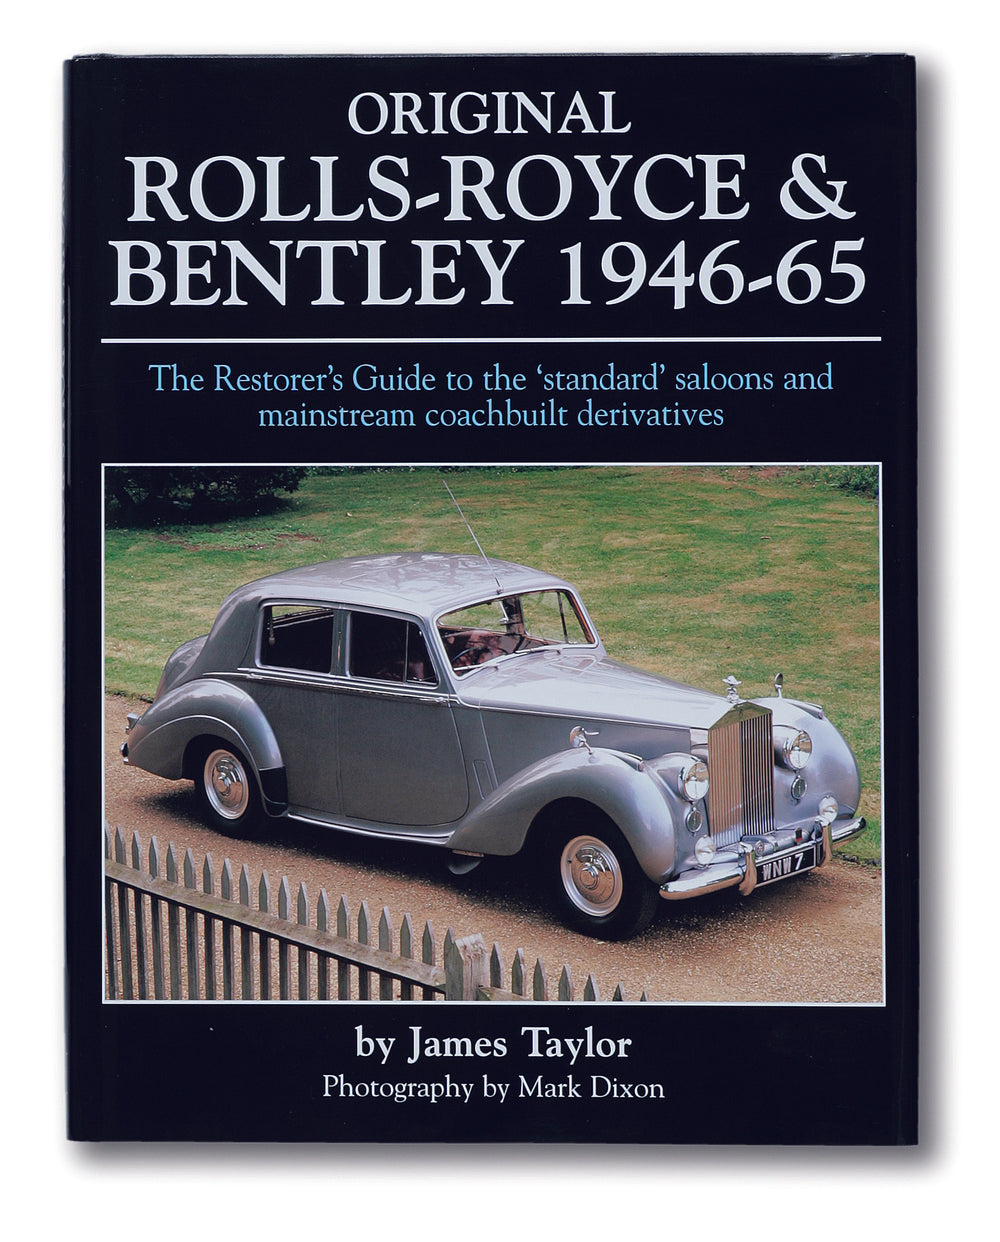 Post-War Bentleys in Classic Books